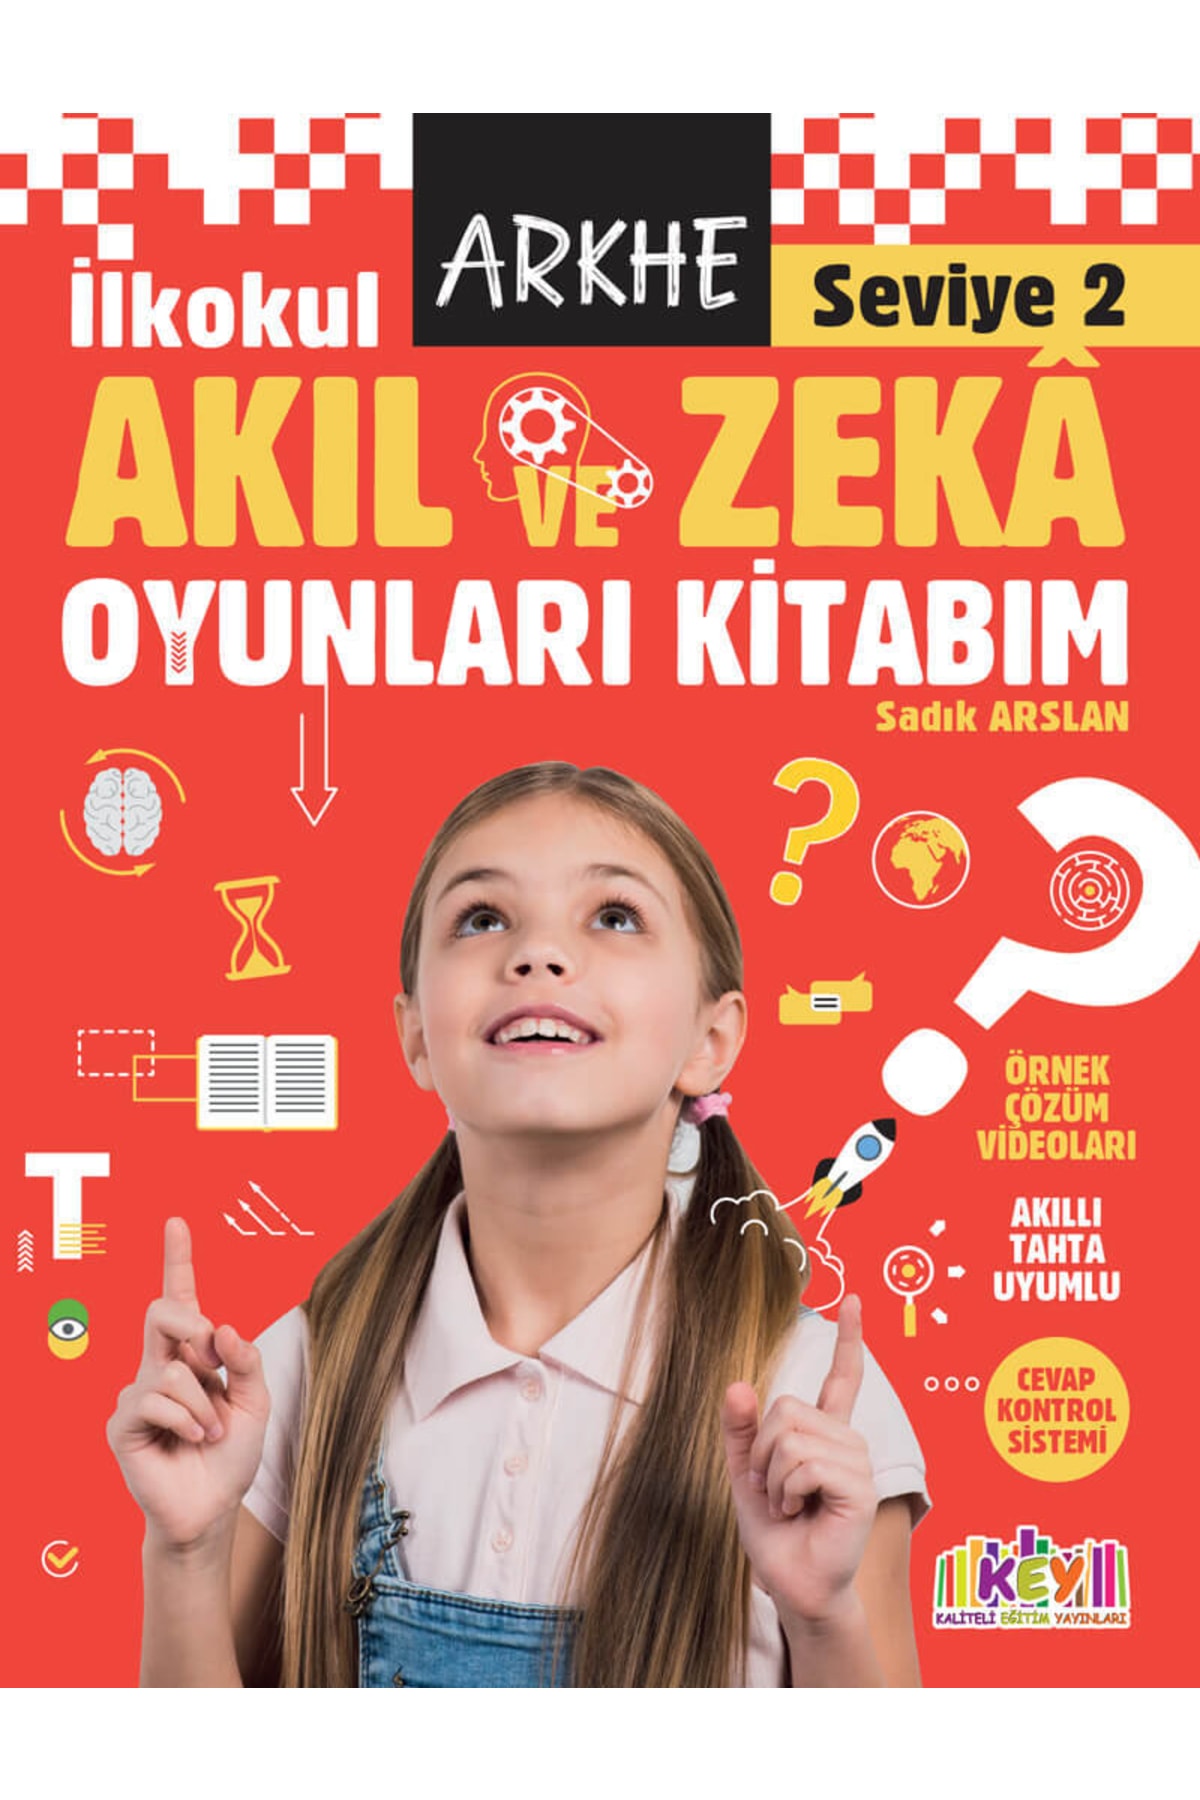 Kaliteli Eğitim Yayınları Arkhe Akıl Ve Zeka Oyunları Kitabım Seviye 2